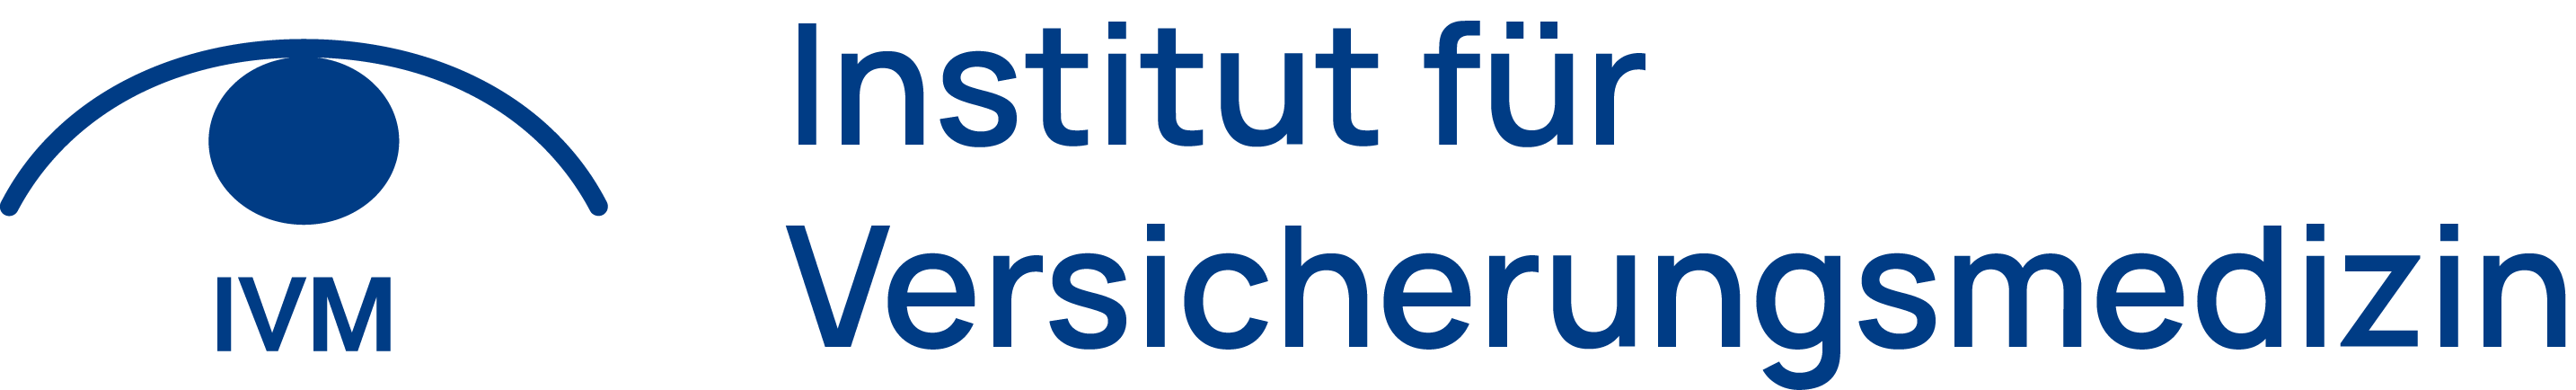 IVM – Institut für Versicherungsmedizin Logo